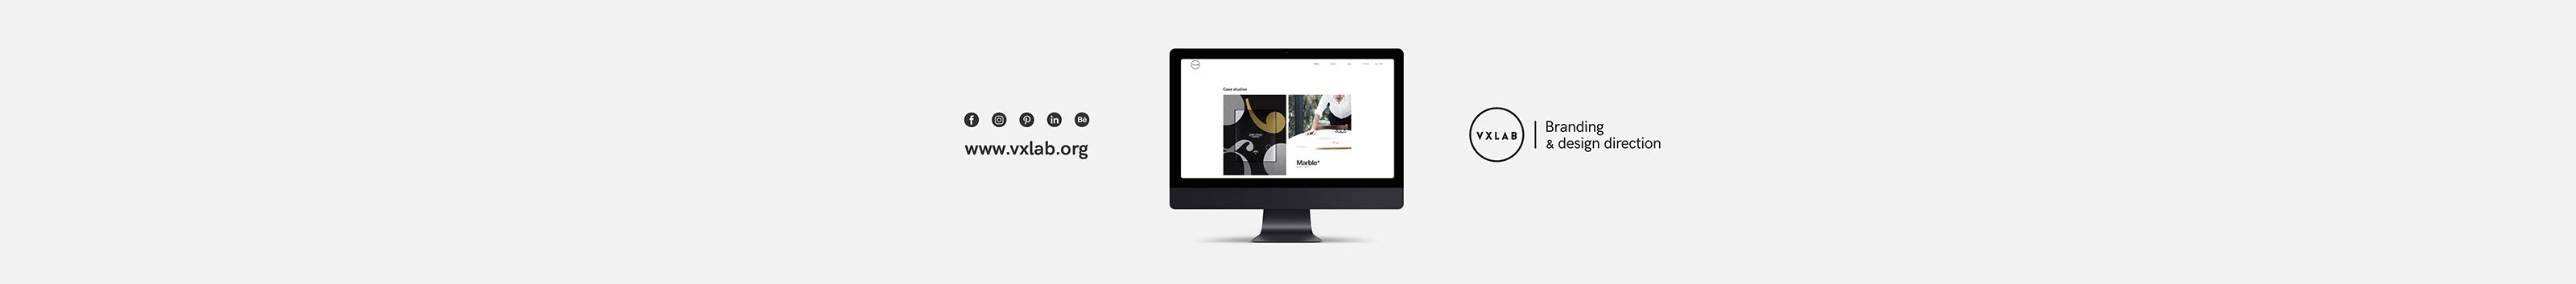 VXLAB | Branding & design direction's profile banner